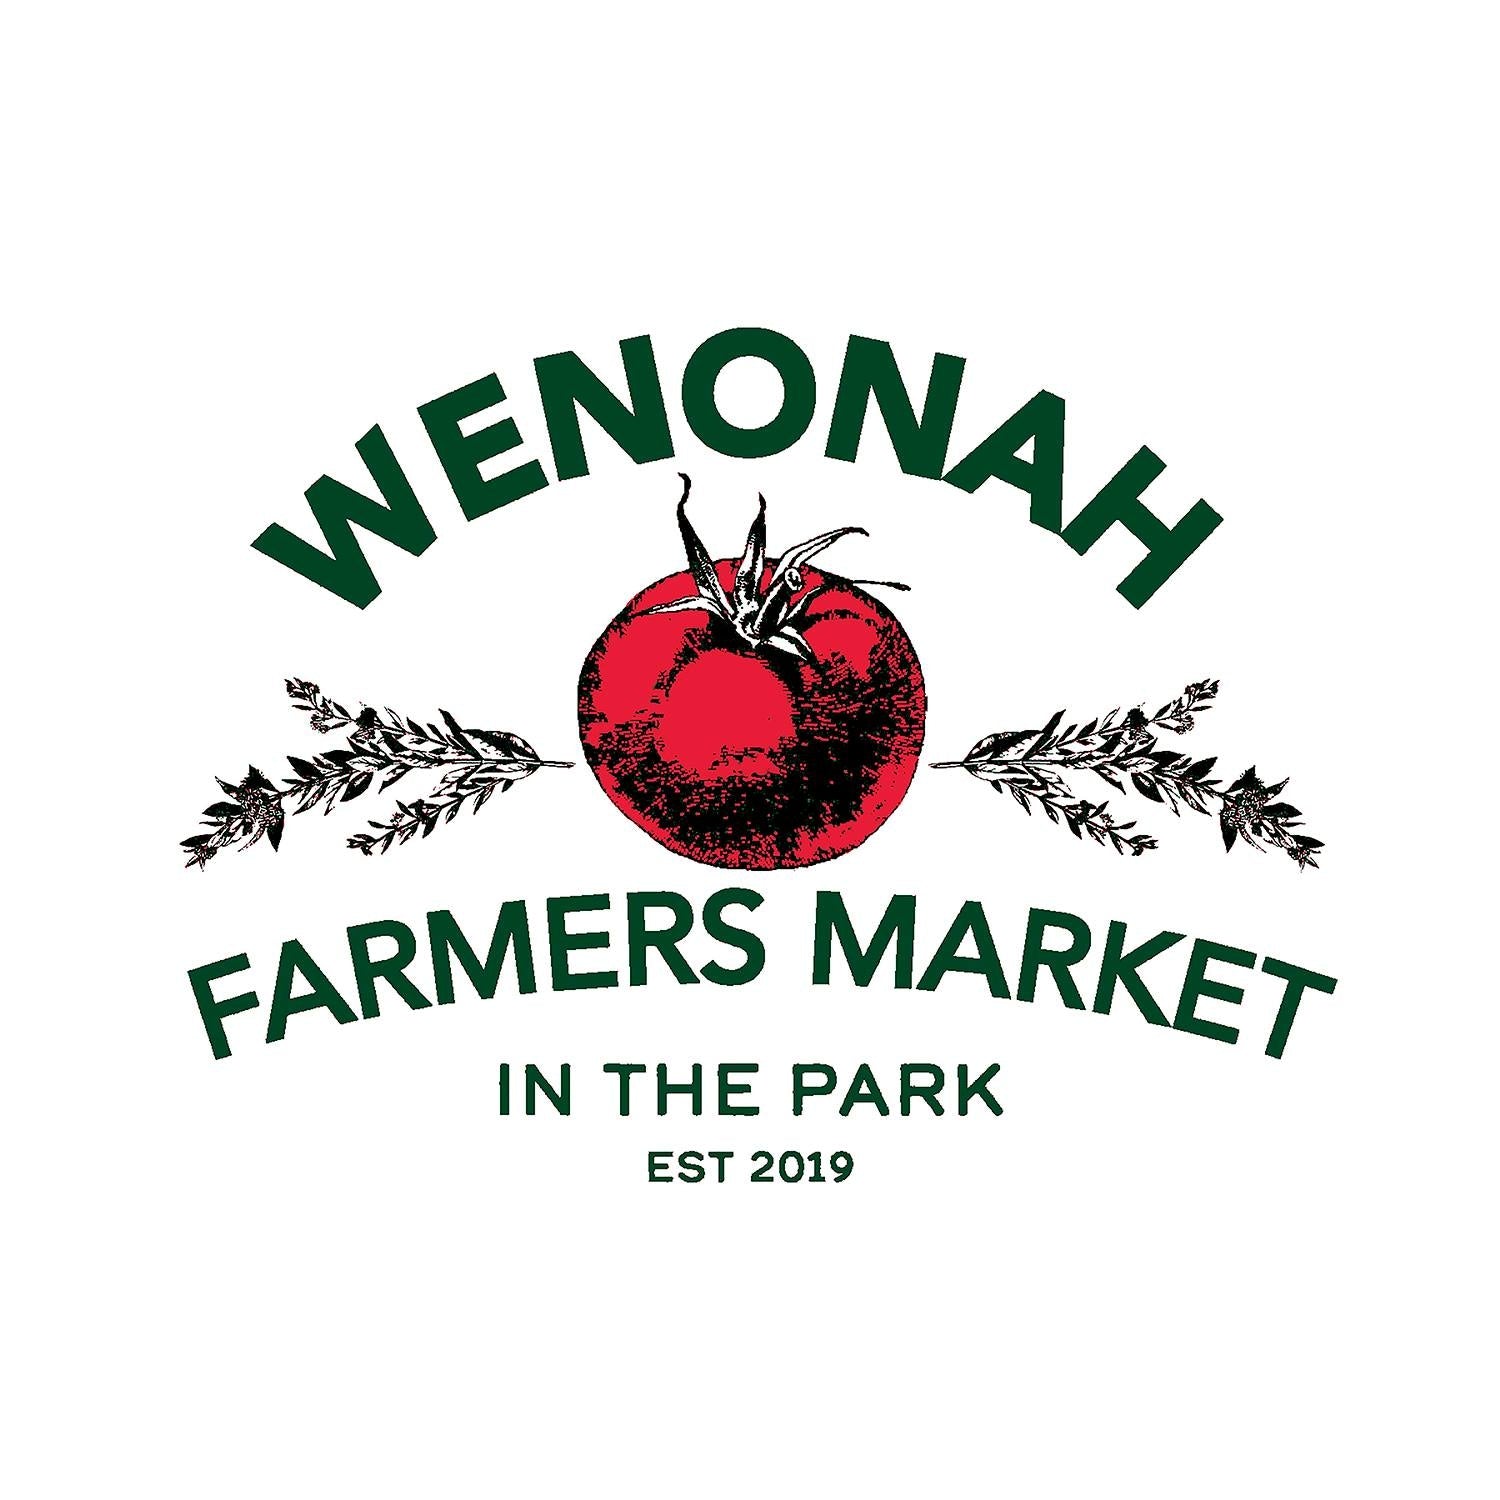 Wenonah Farmer's Market June 29th